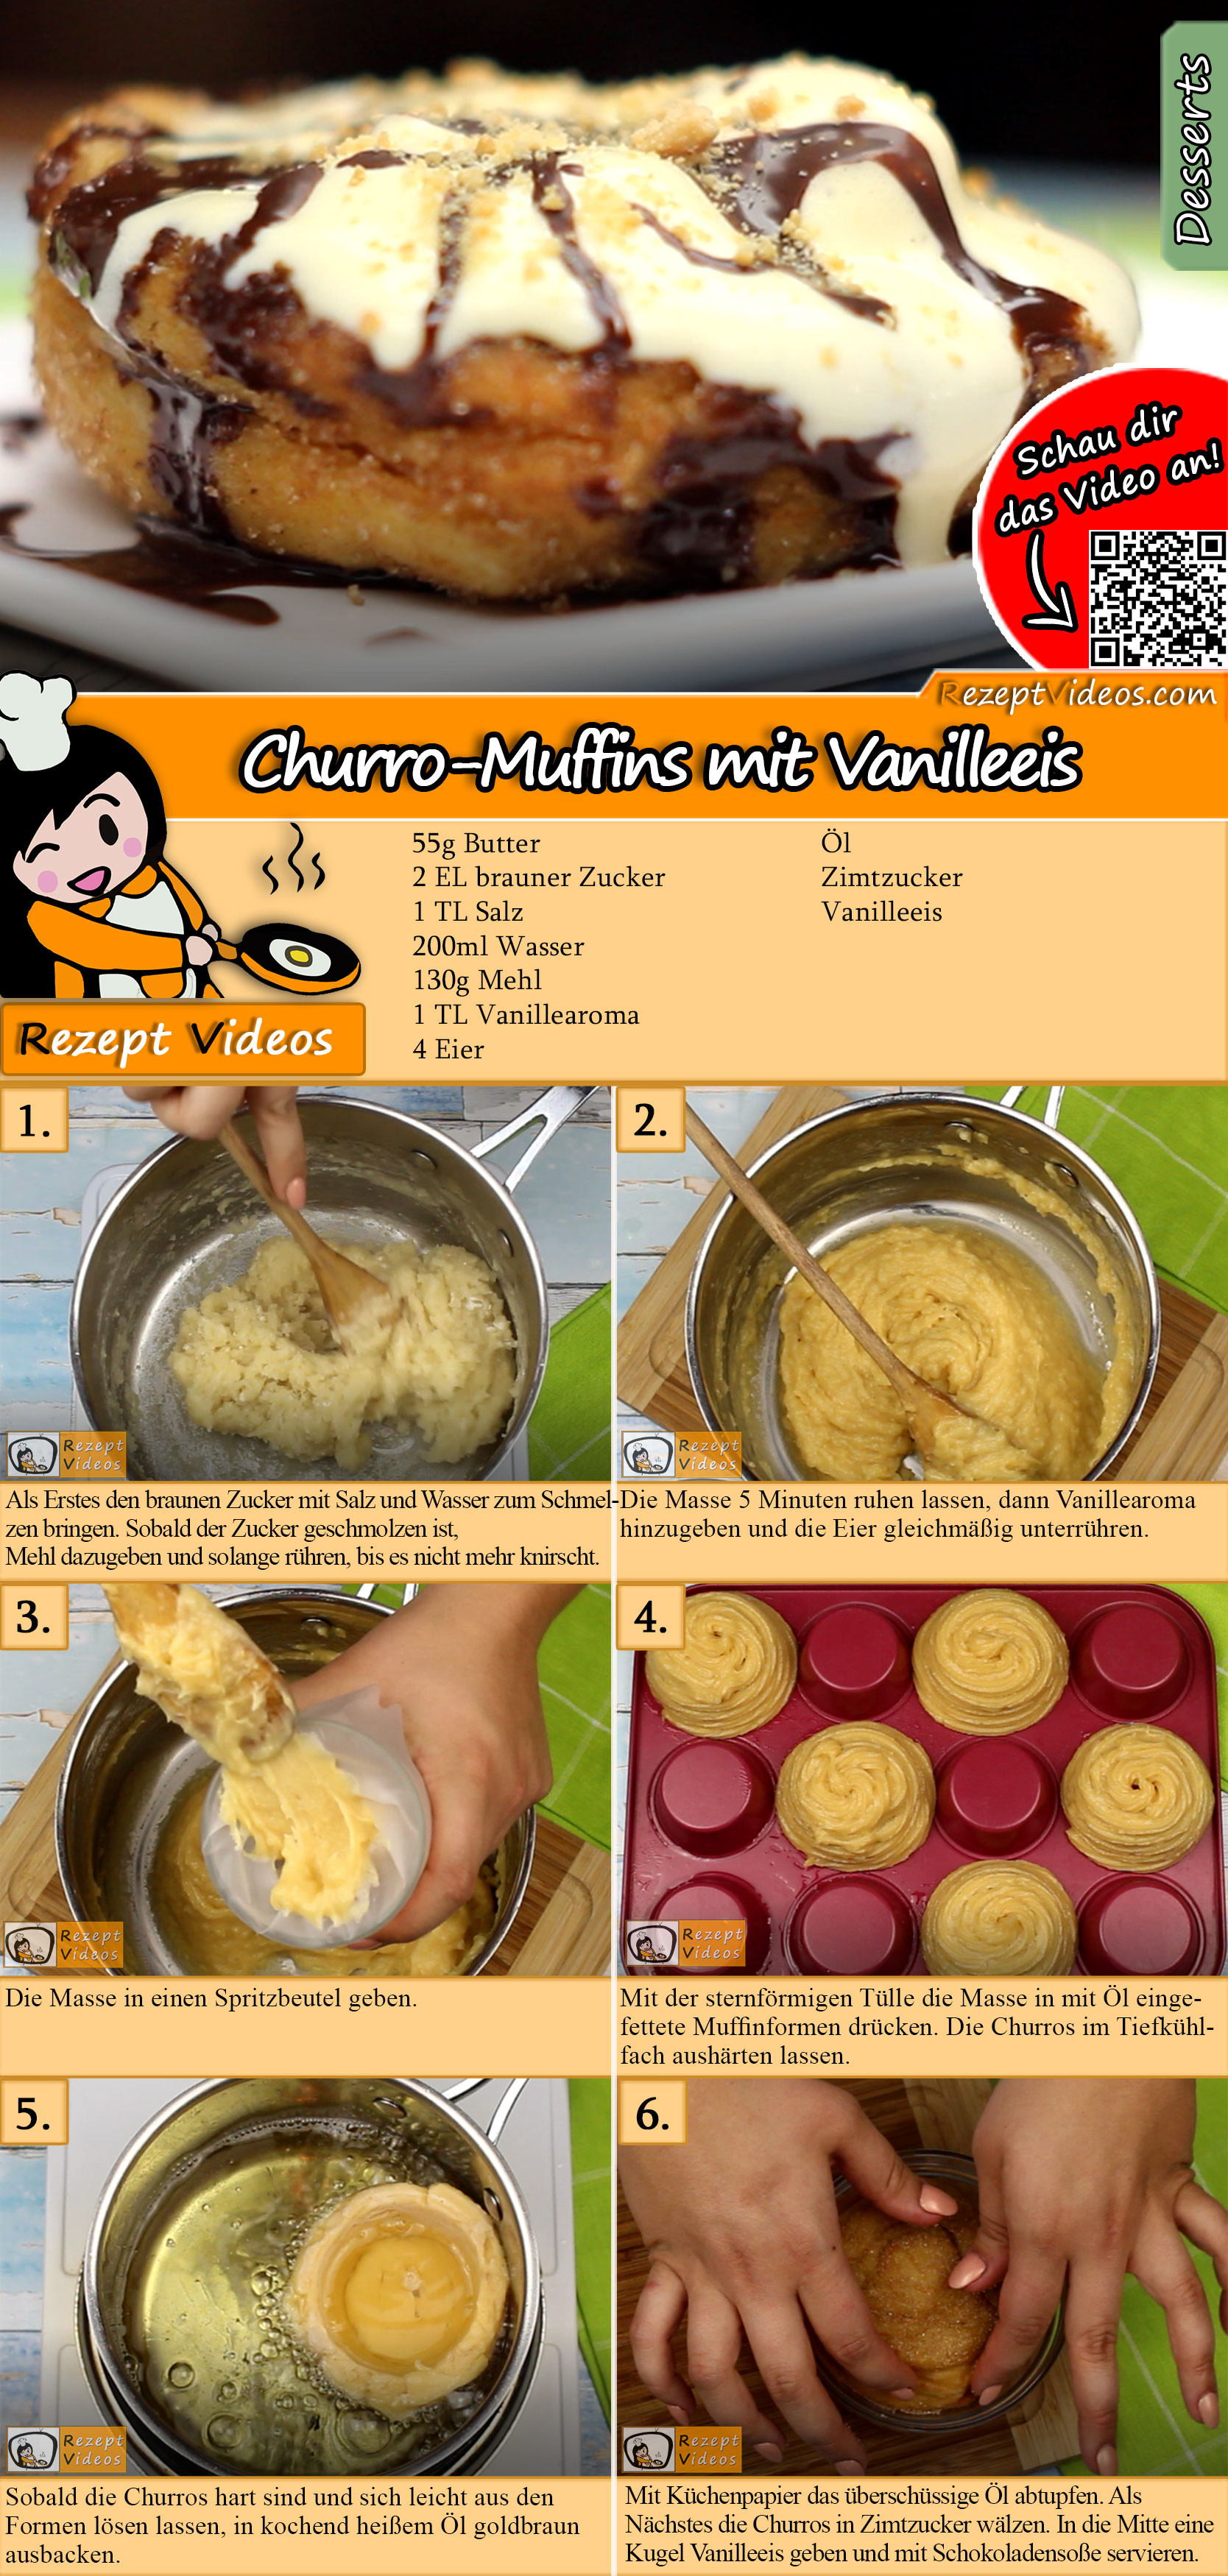 Churro-Muffins mit Vanilleeis Rezept mit Video